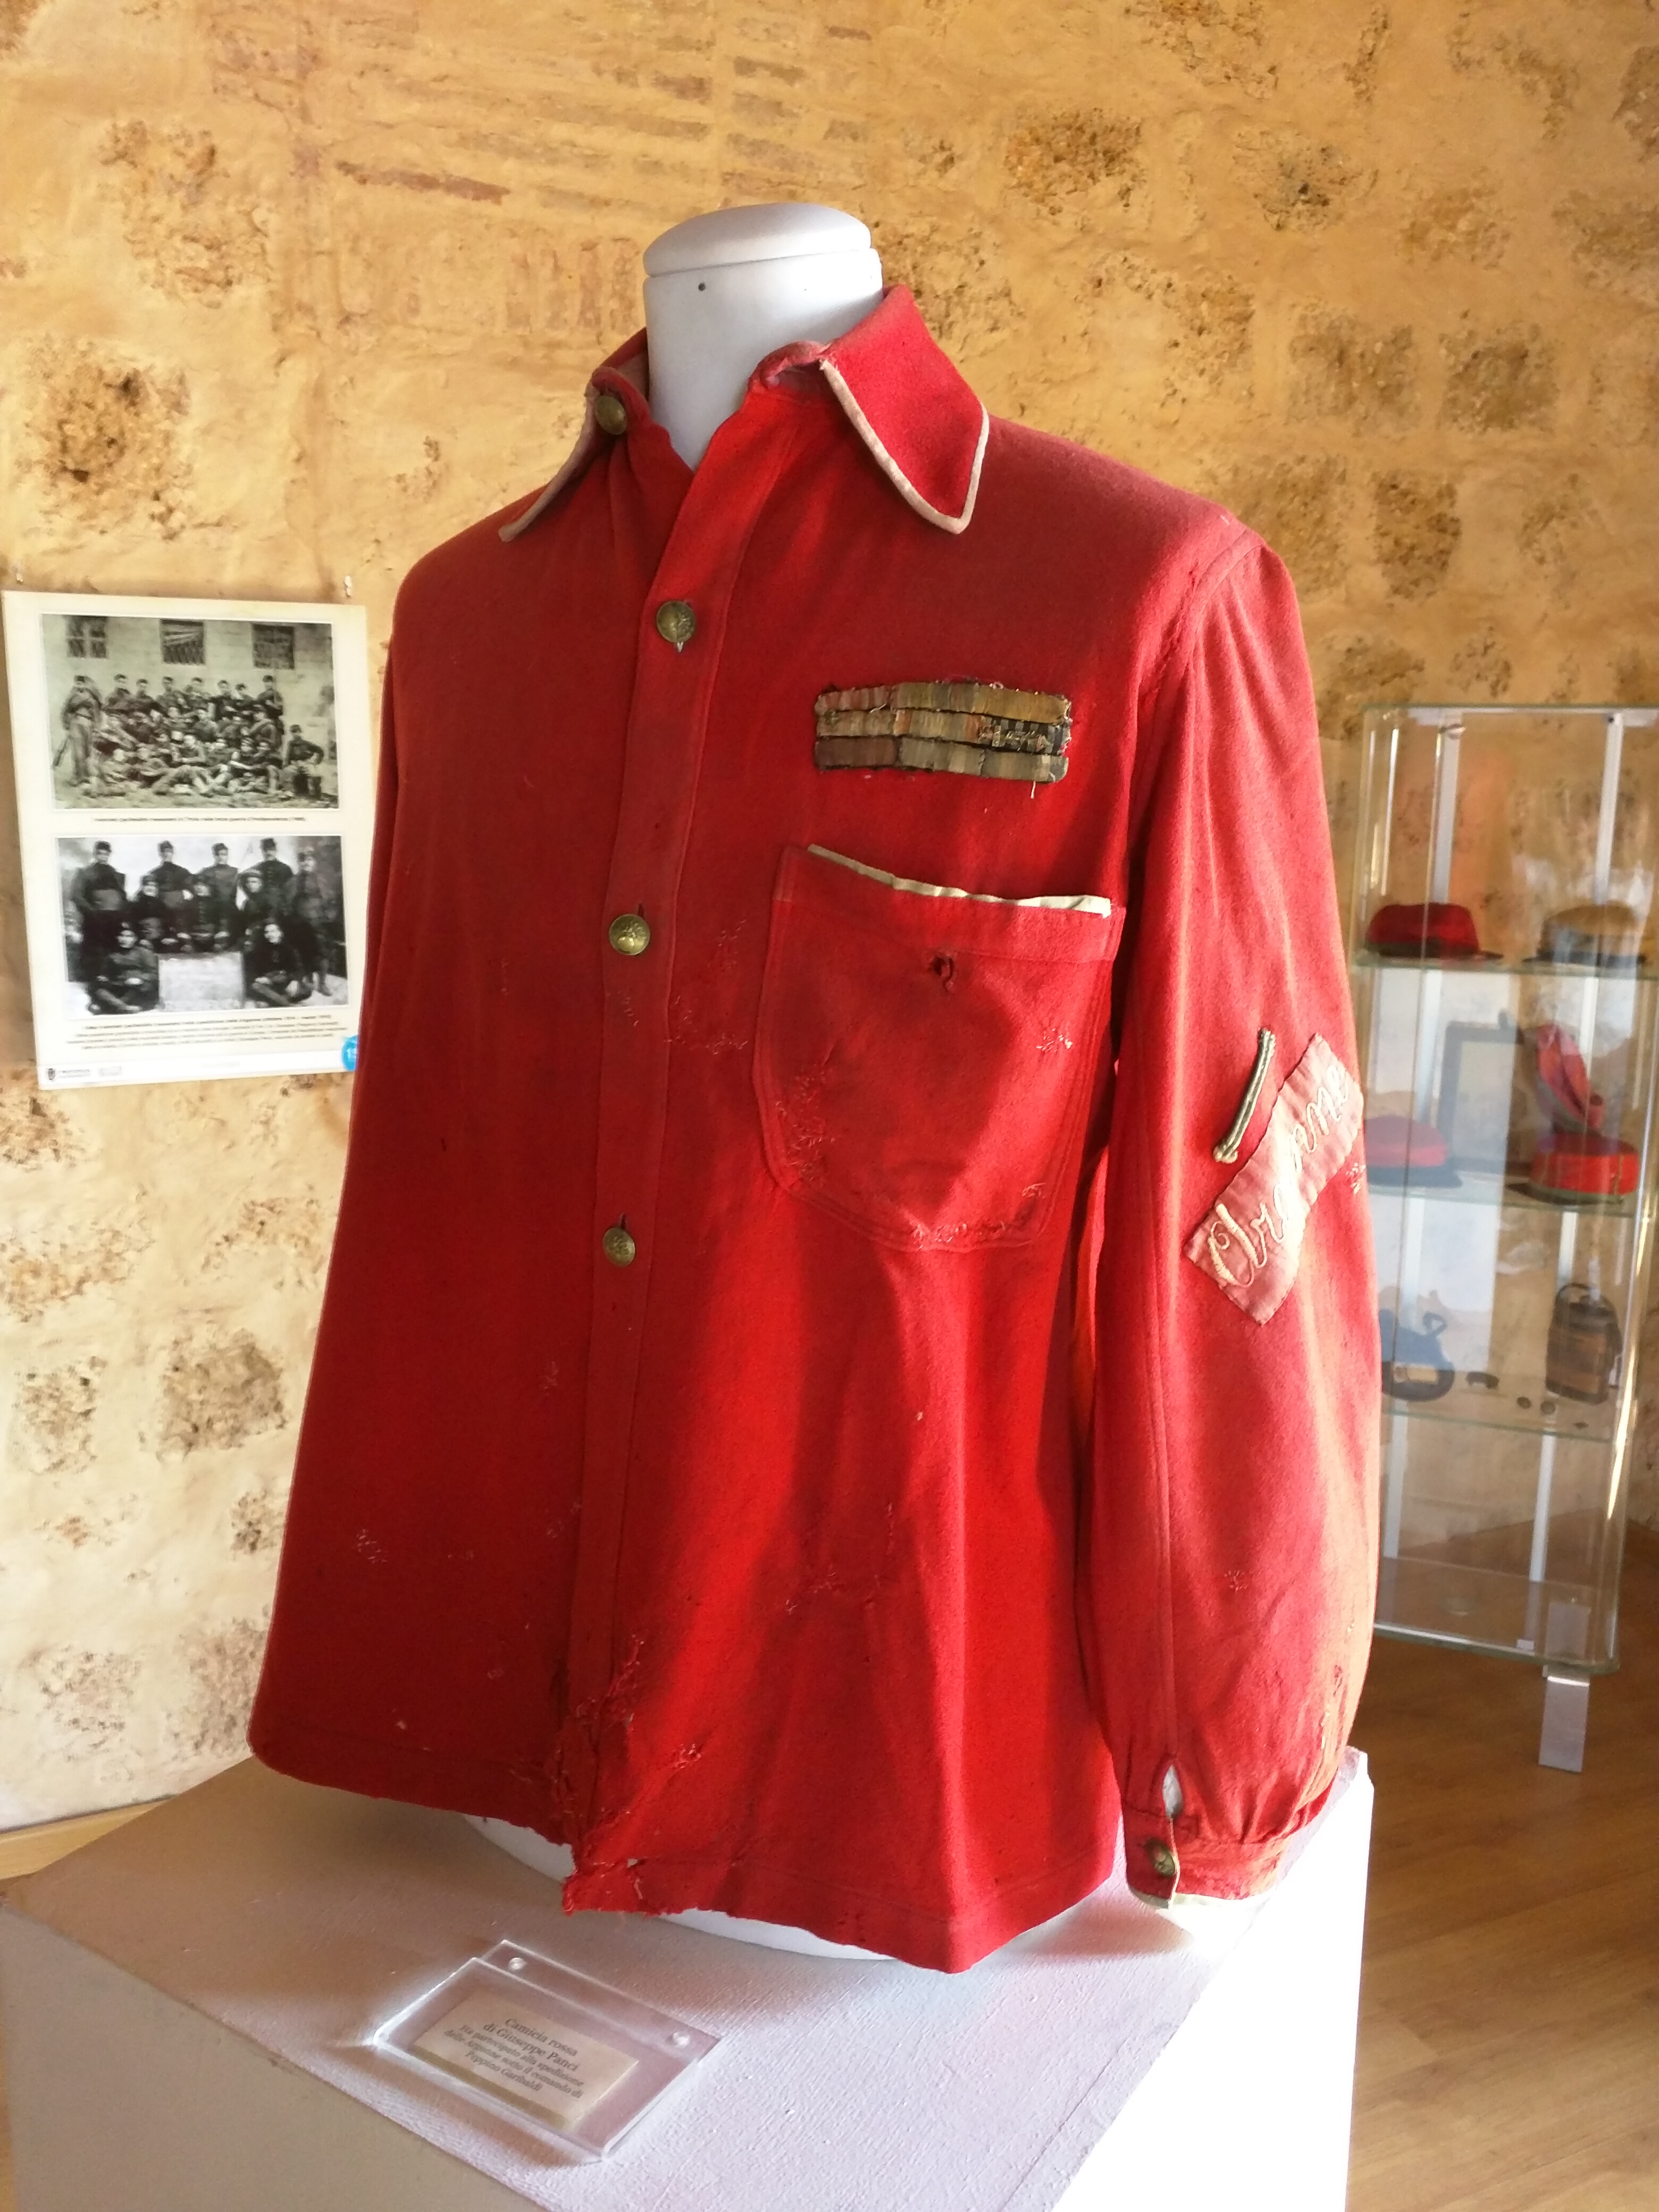 File:Camicia rossa, garibaldini.jpg - Wikimedia Commons